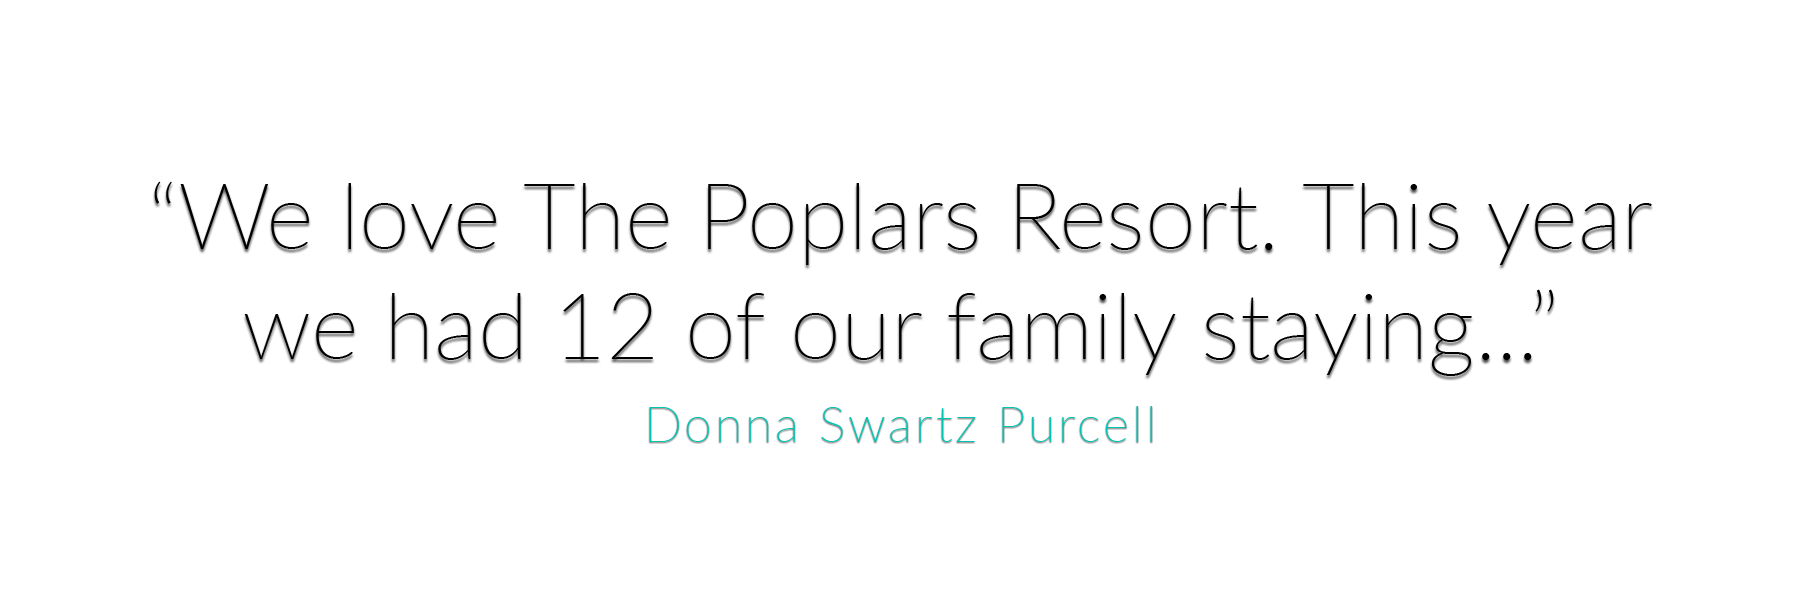 Donna Swartz Purcell